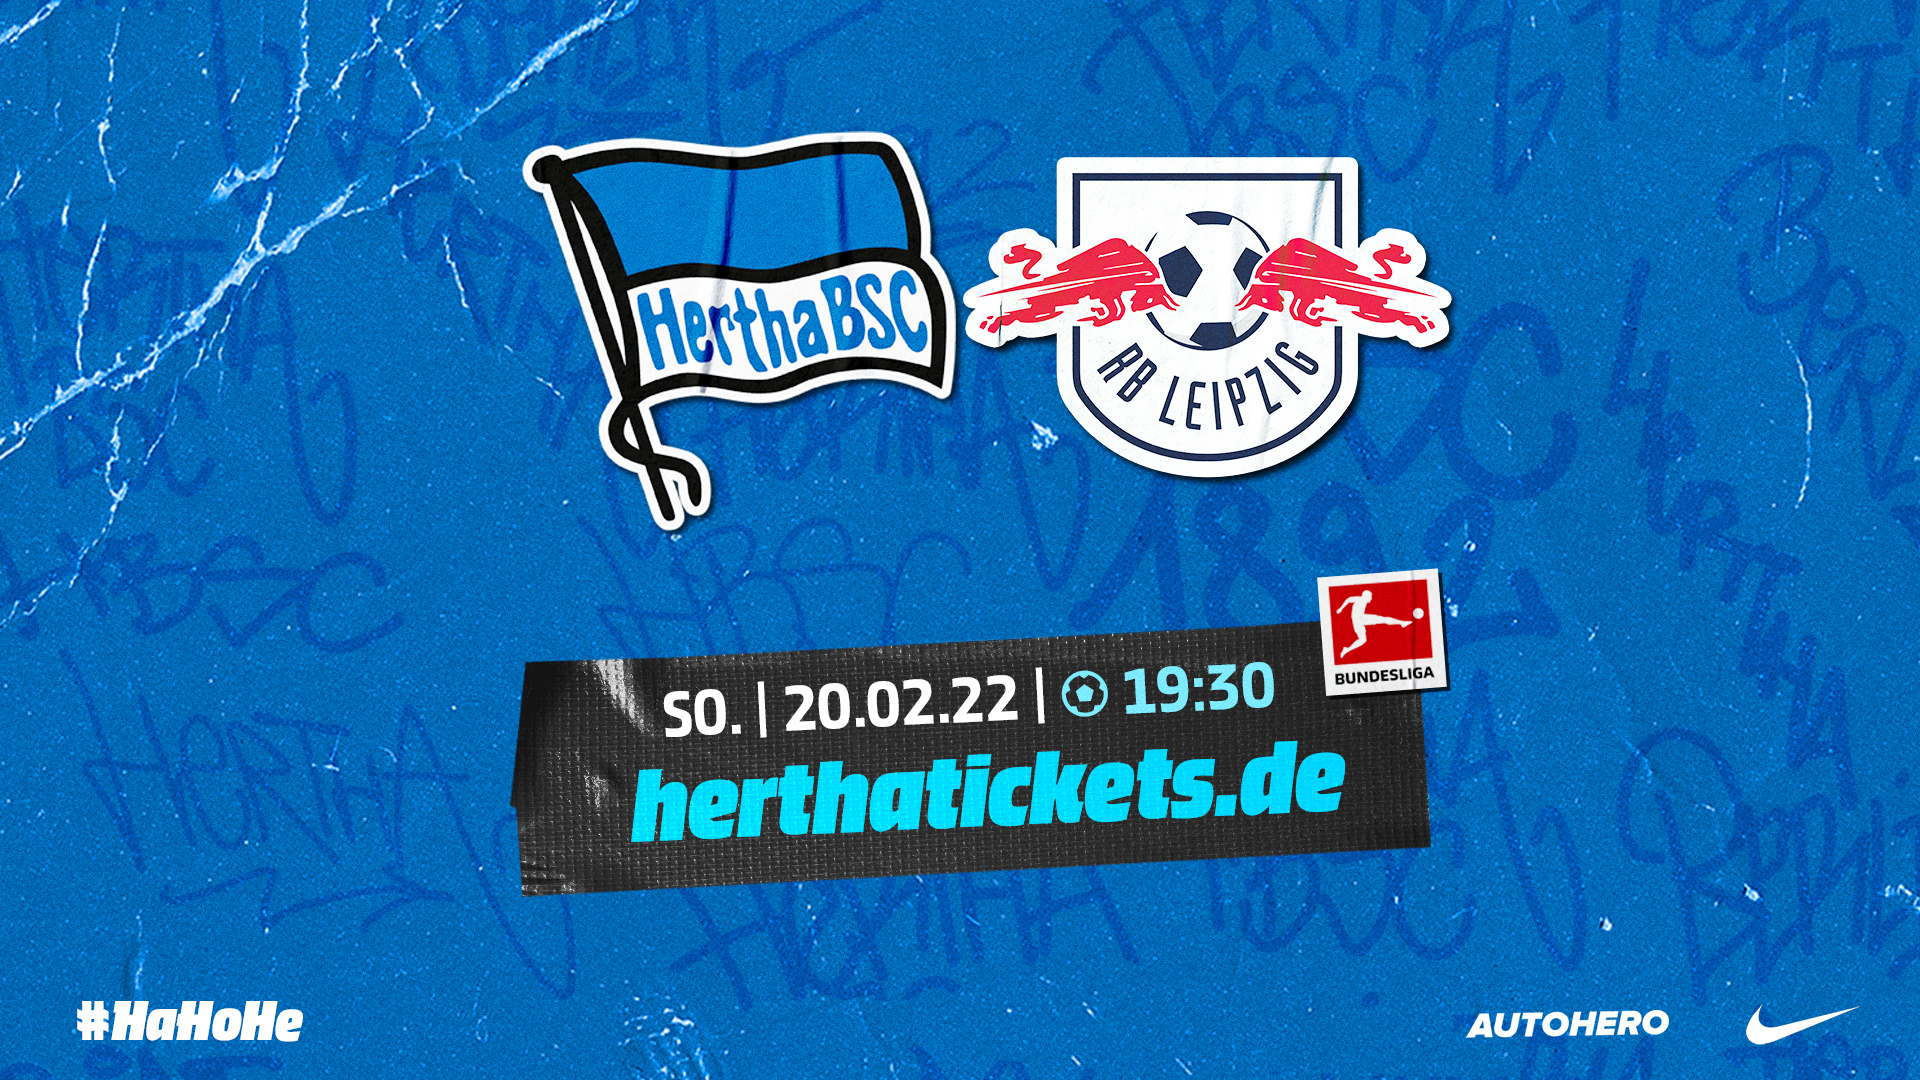 Die Logos von Hertha BSC und RasenBallsport Leipzig sowie die Anstoßzeit.